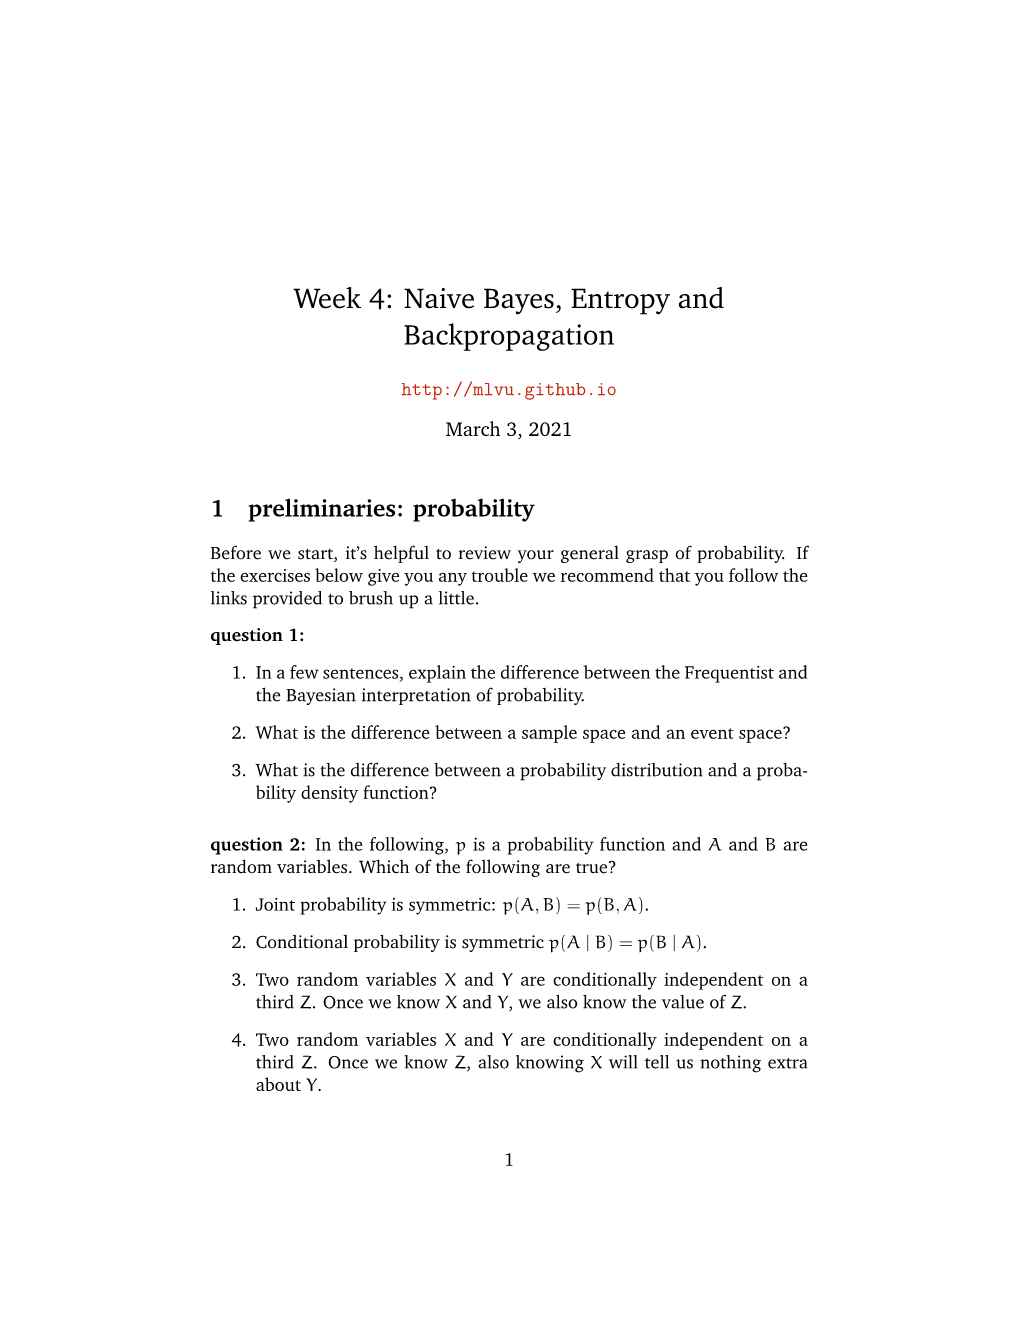 Week 4: Naive Bayes, Entropy and Backpropagation